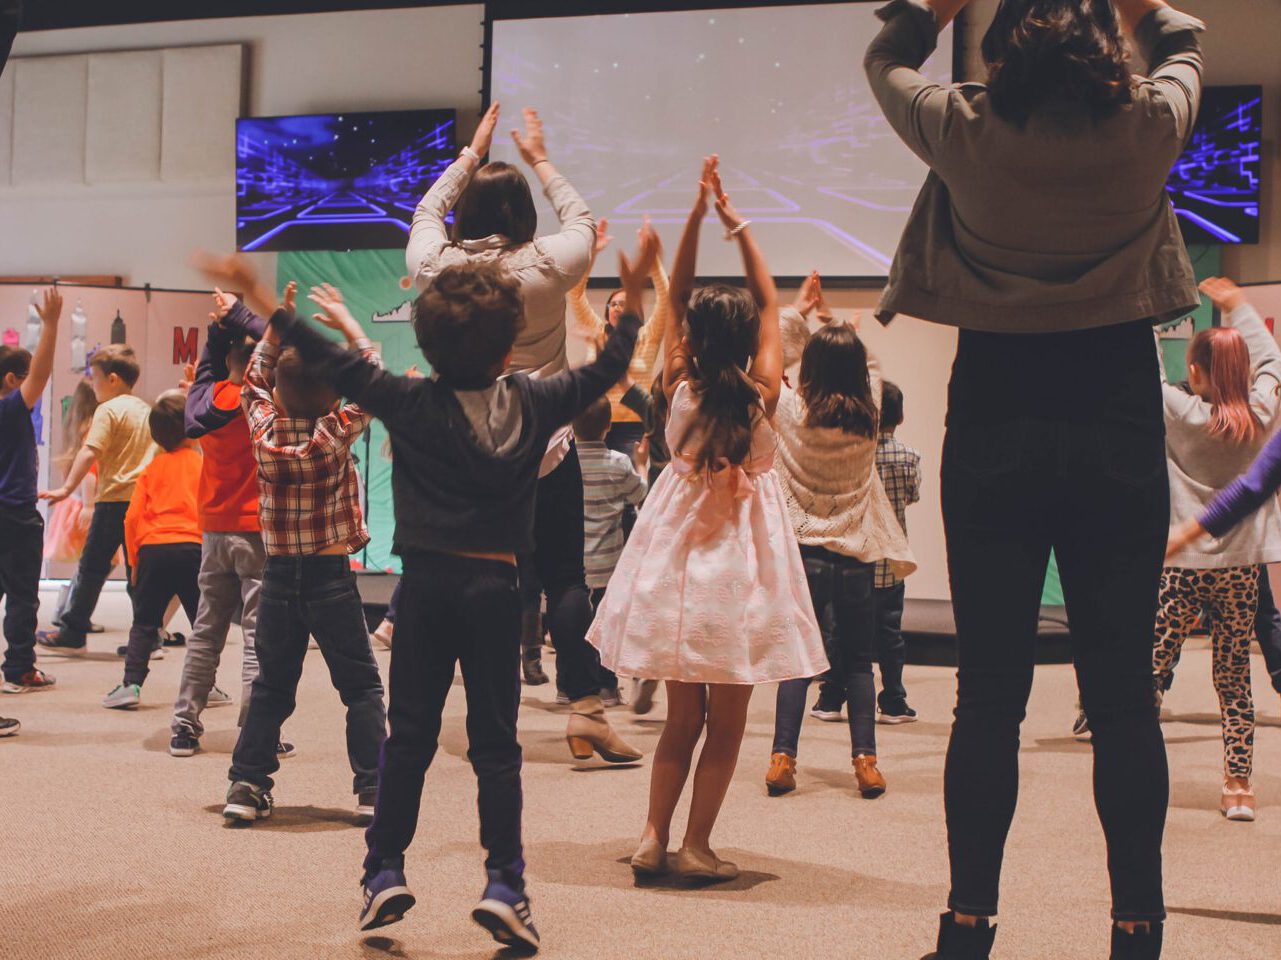 Viele kleinere Schüler, die gemeinsam und zu gleich einen Tanz präsentieren. Alle Schüler und zwei Erwachsene sind mit dem Rücken zu sehen